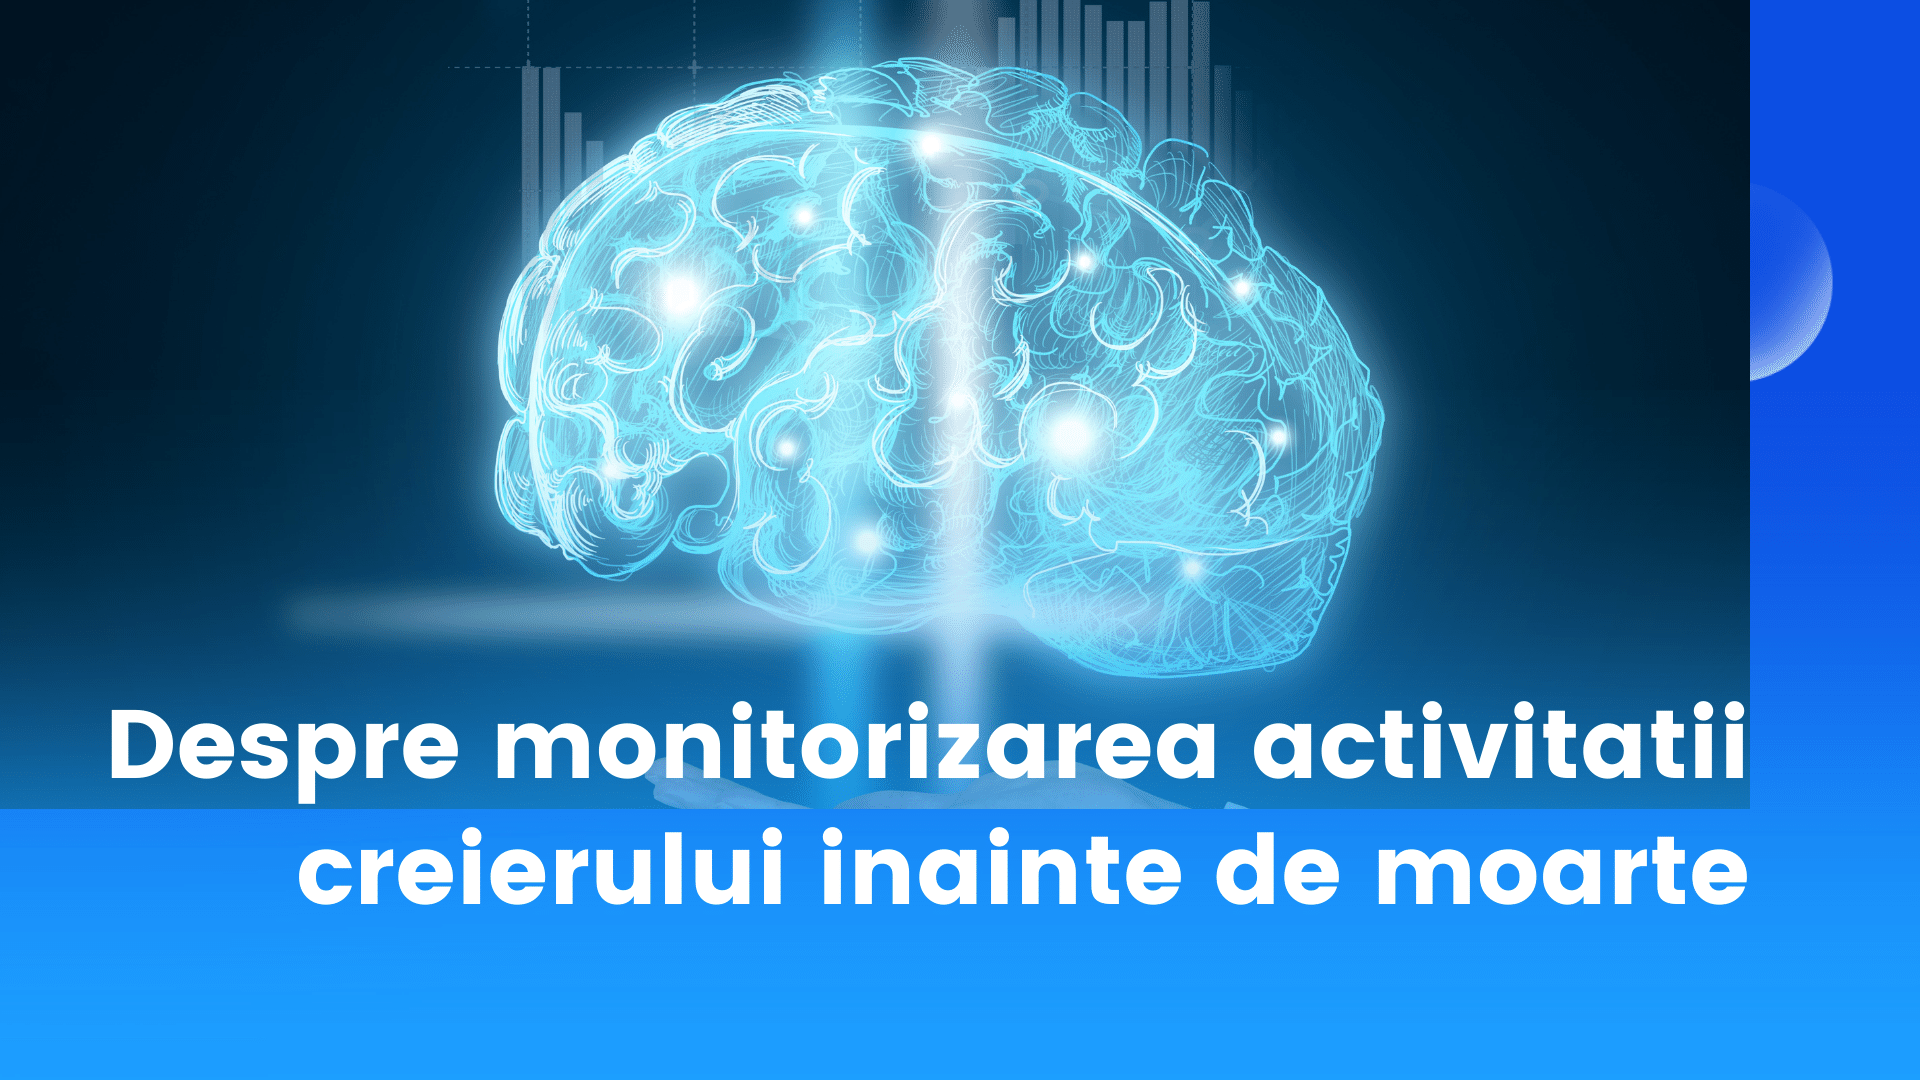 Despre monitorizarea activitatii creierului inainte de moarte cu ajutorul electroencefalografului